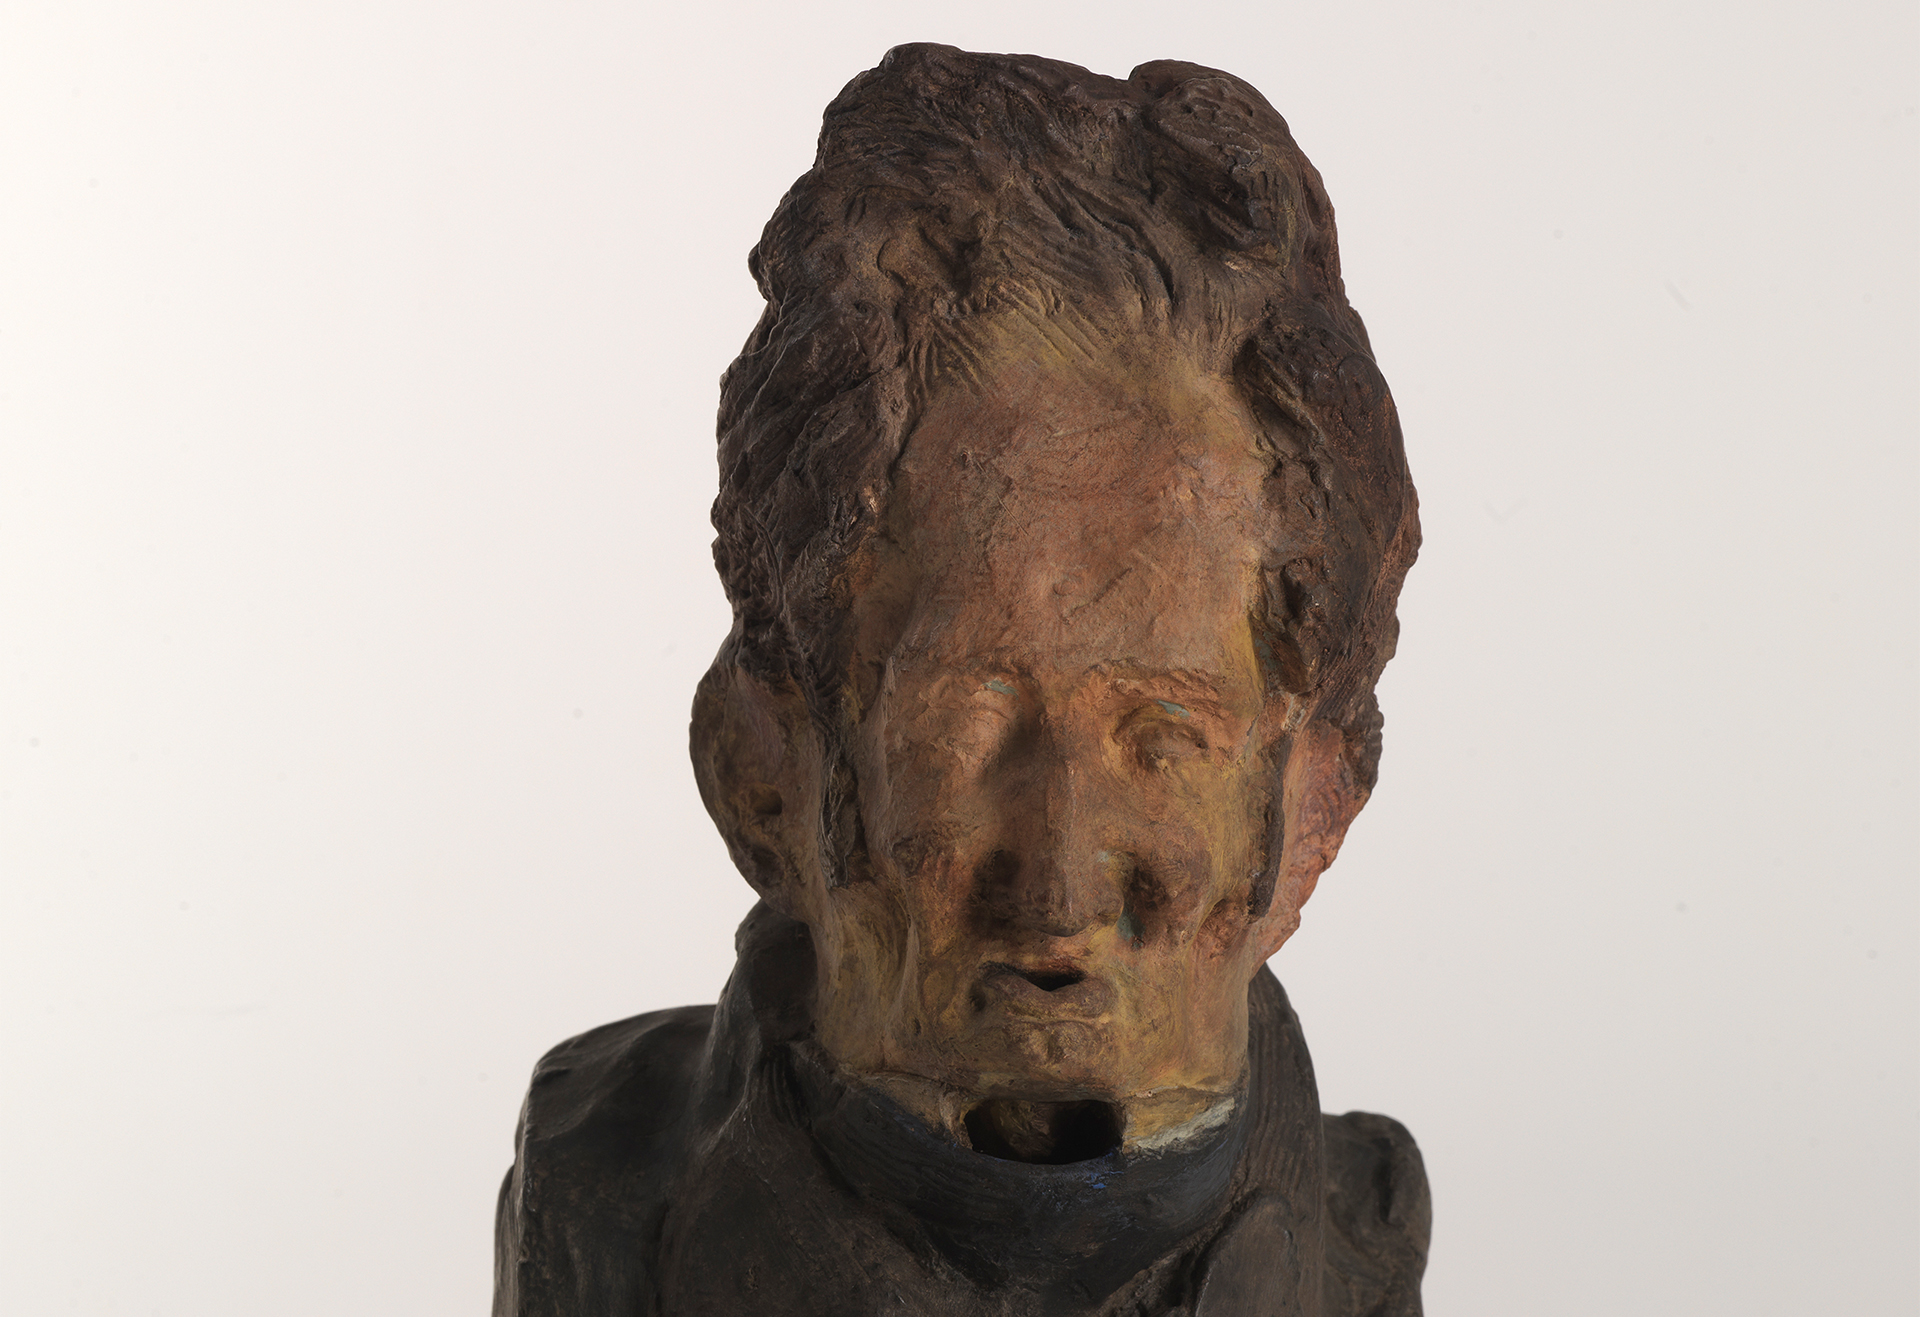 Zu sehen ist eine Büste eines Mannes mit einem länglichen Kopf. Die Skulptur stammt von dem französischen Künstler und Bildhauer Honore Daumuier.